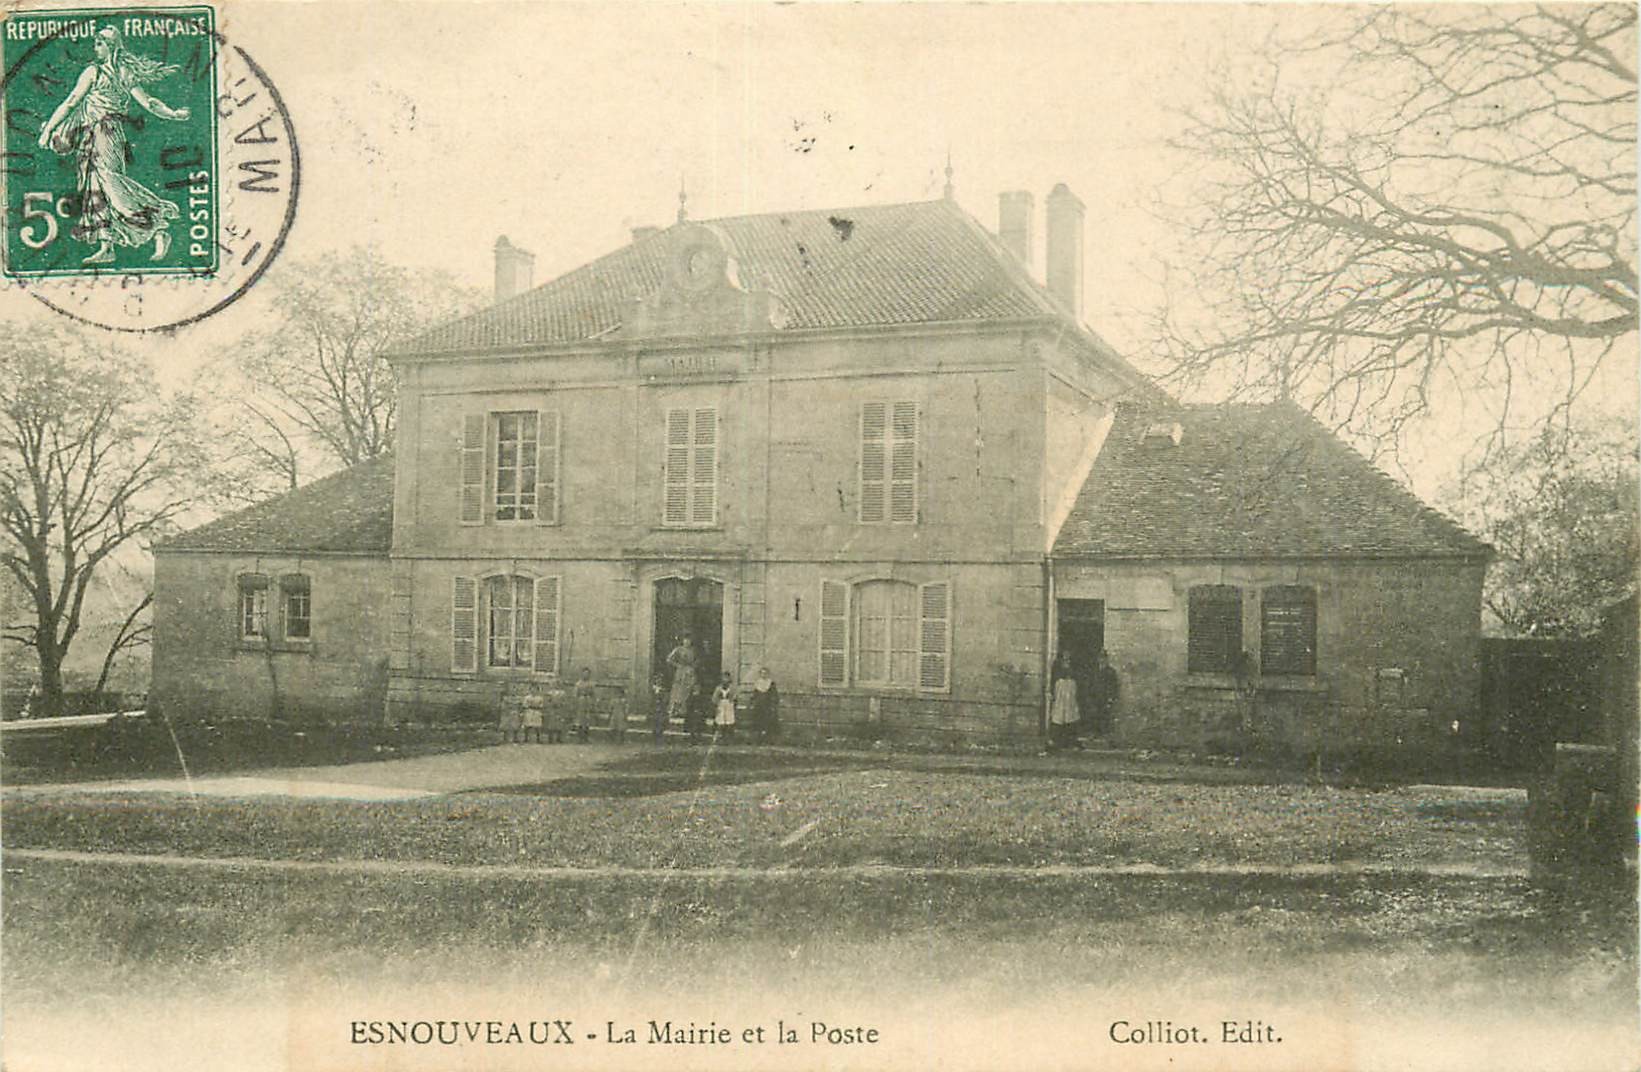 52 ESNOUVEAUX. La Mairie et la Poste 1910